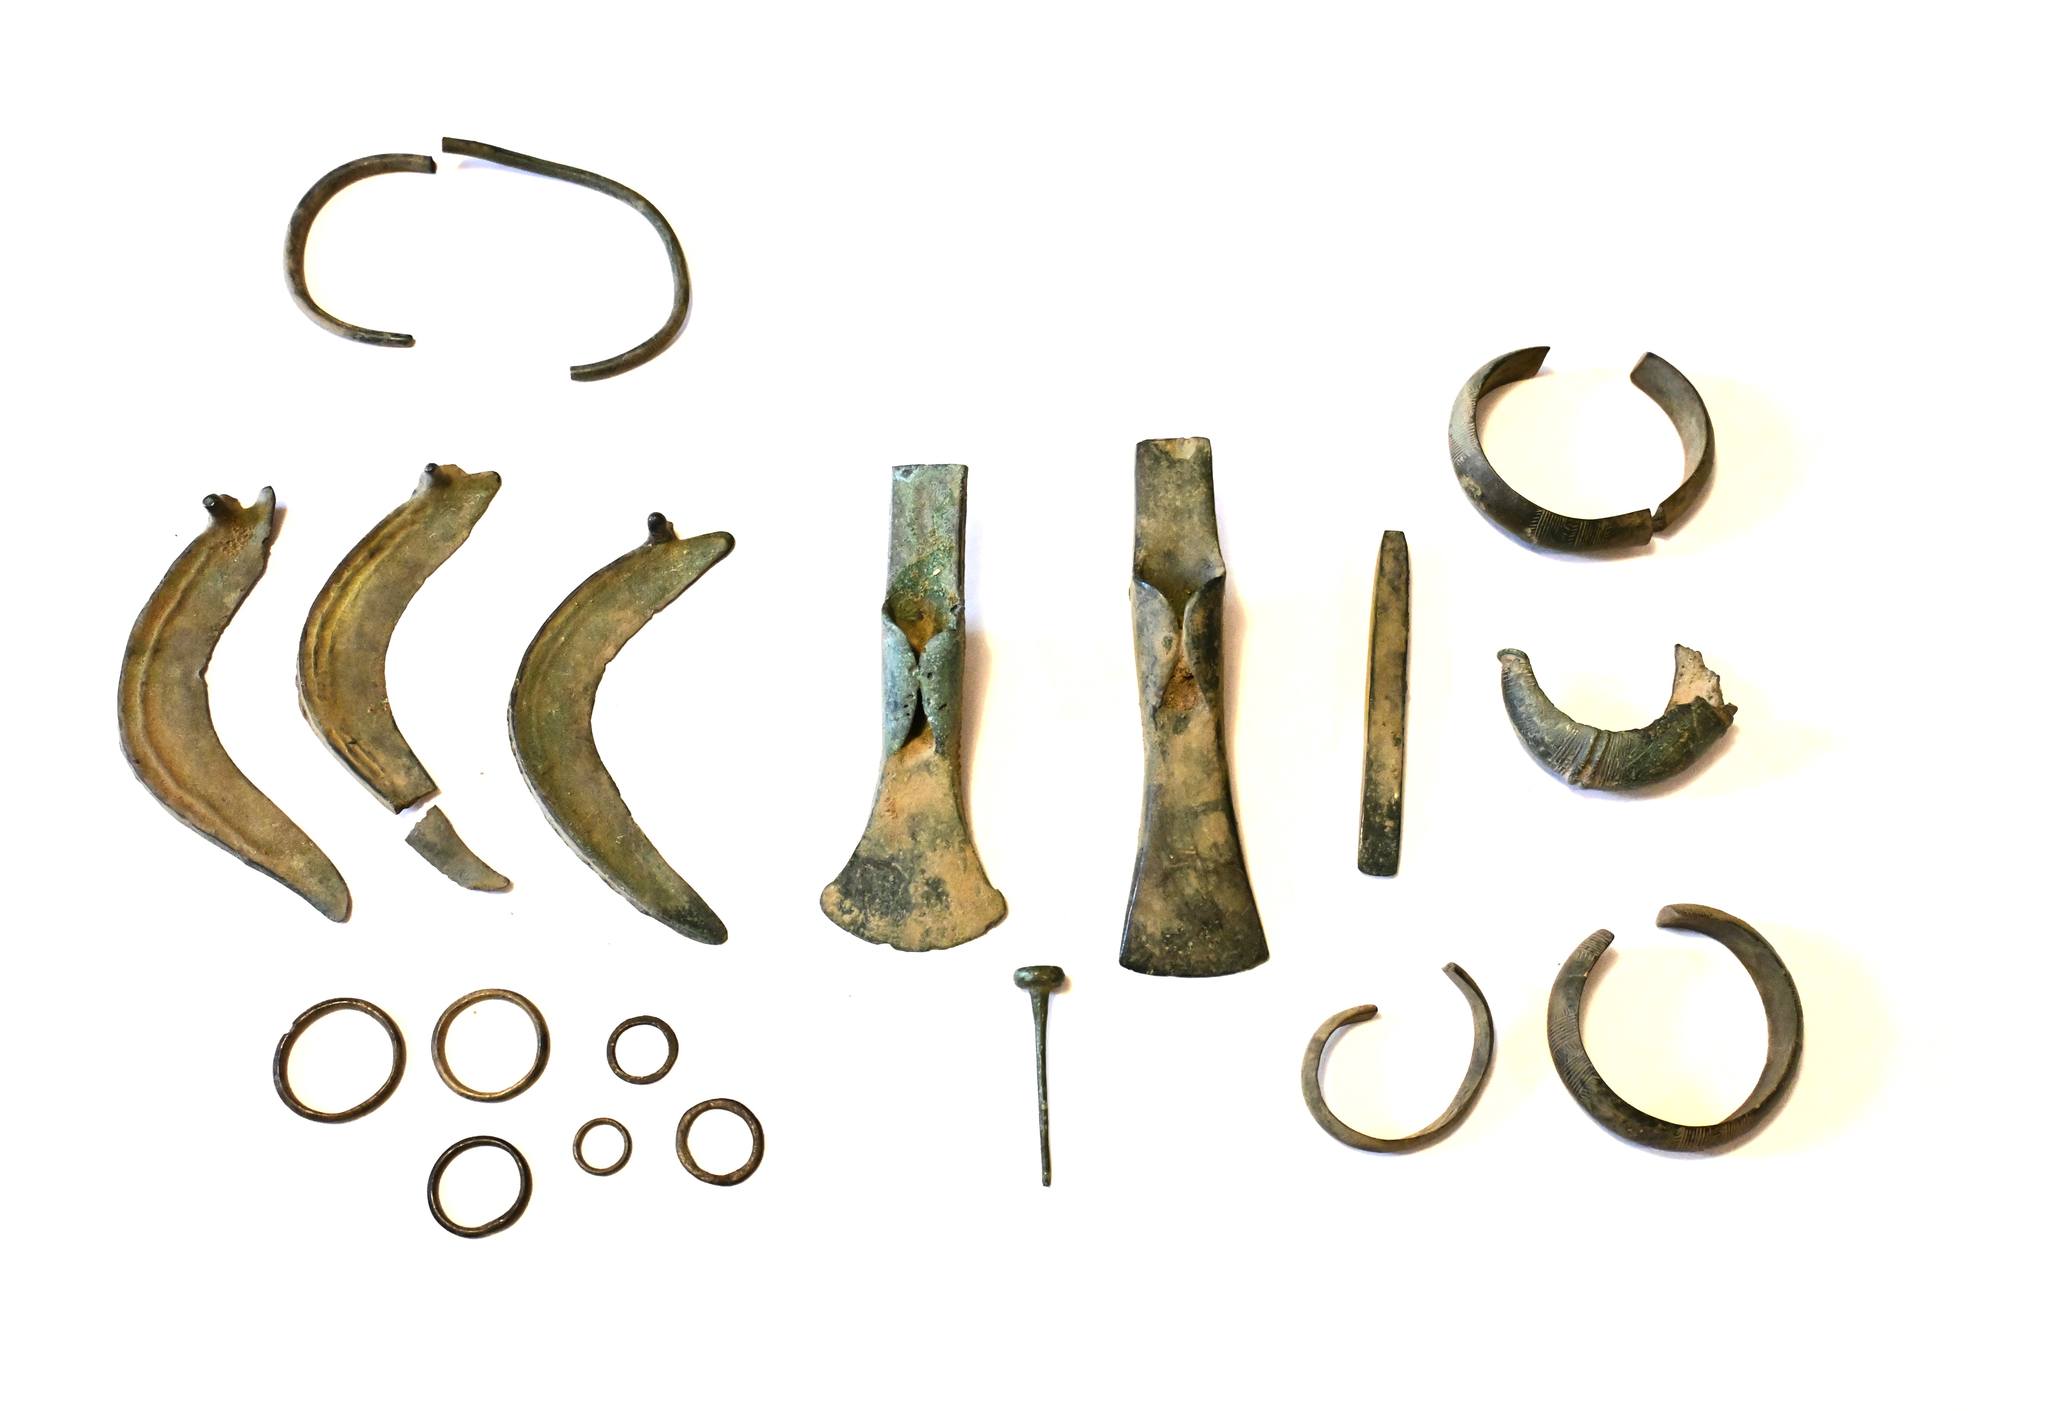 Spolek detektoristů objevil poklad seker, srpů a dalších předmětů z doby bronzové